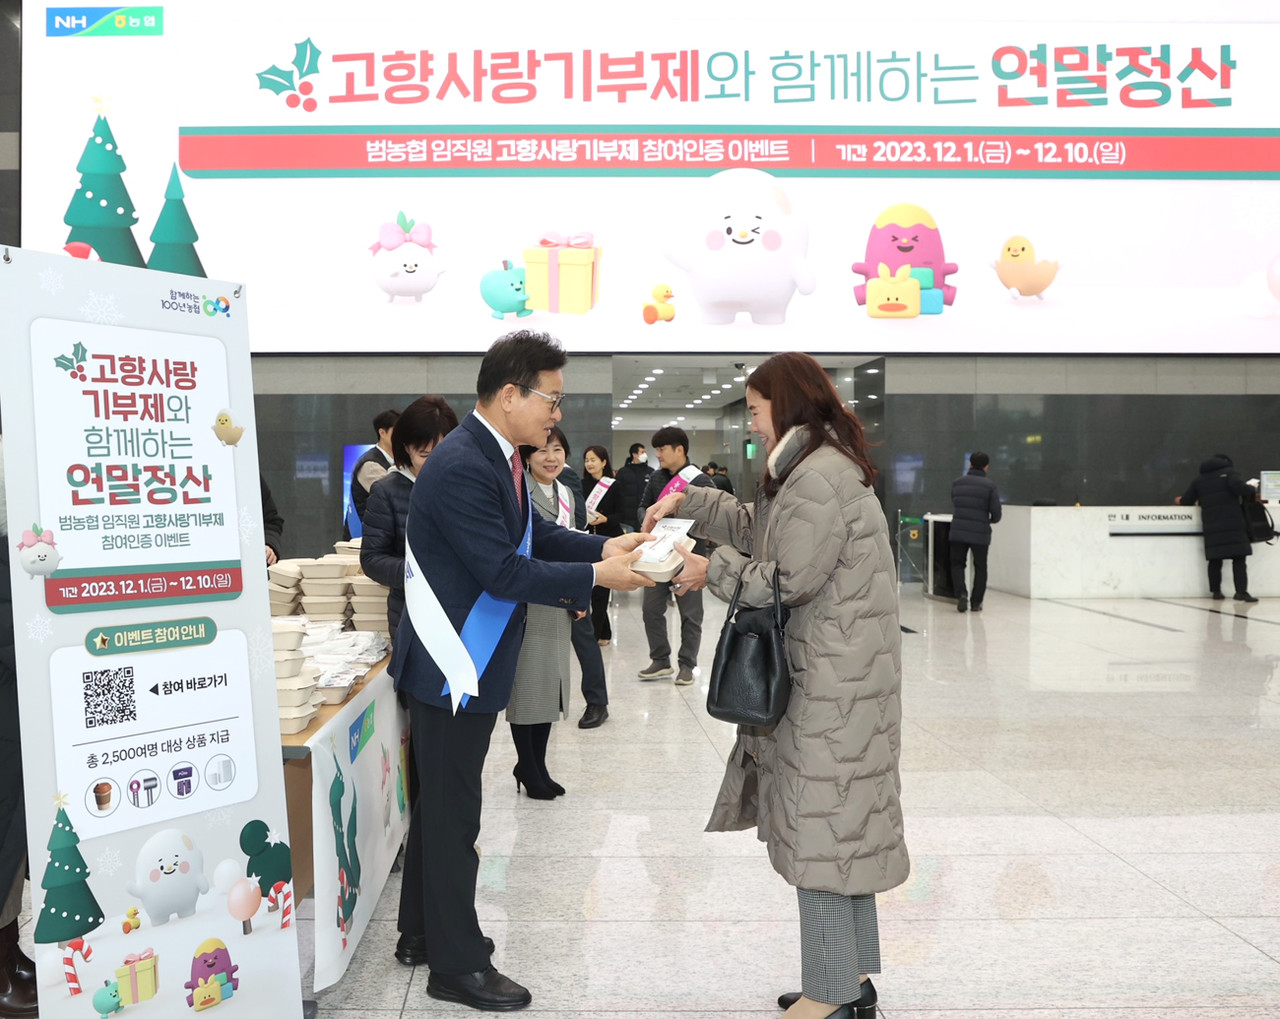 농협중앙회는 지난 1일 출근길 임직원에게 고향사랑기부제 홍보 캠페인을 펼쳤다.